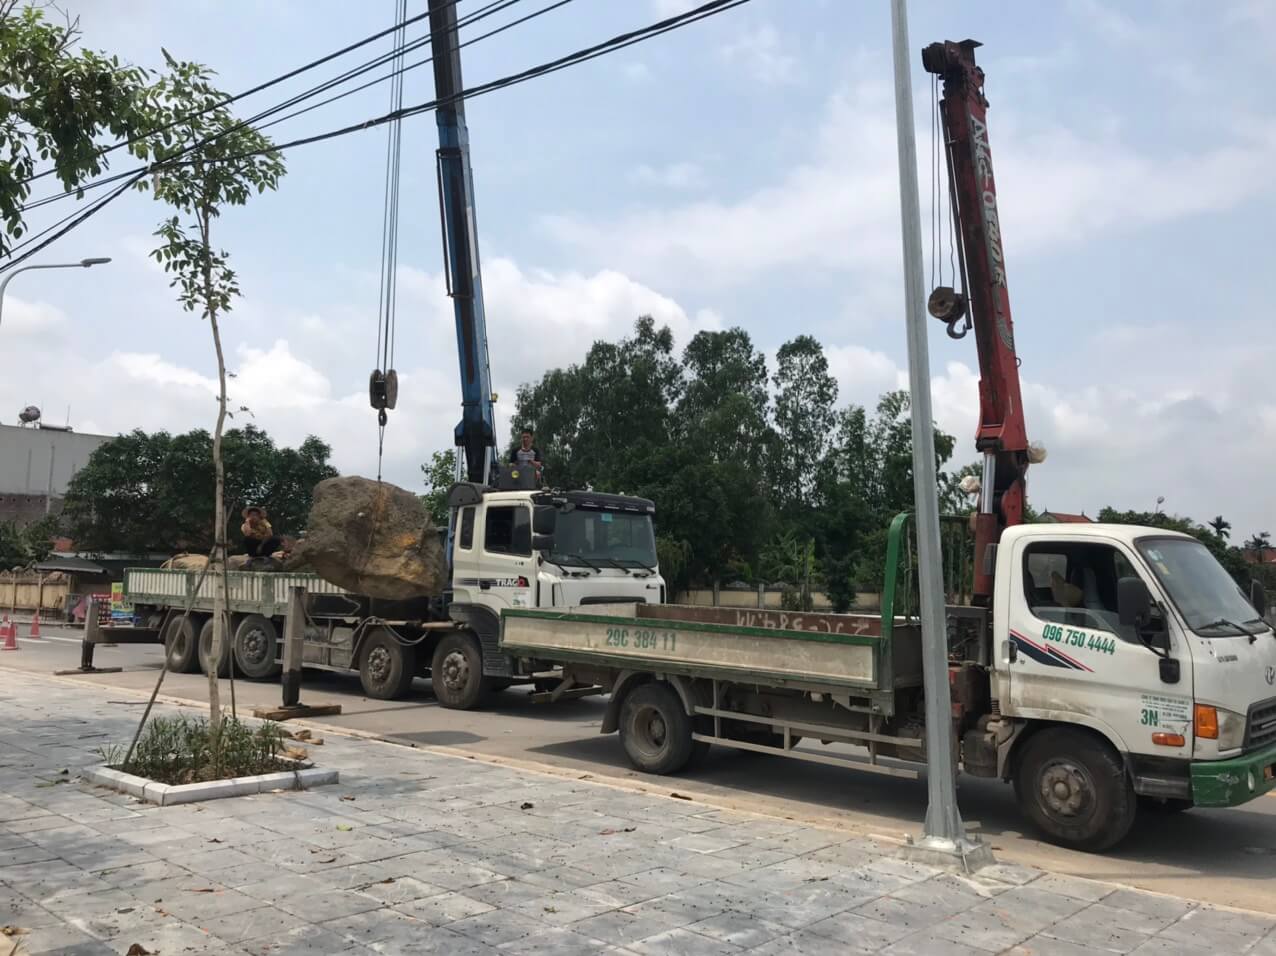 Vận Tải Xanh cung cấp dịch vụ cho thuê xe cẩu quận Hoàng Mai – Liên hệ hotline 0965874444